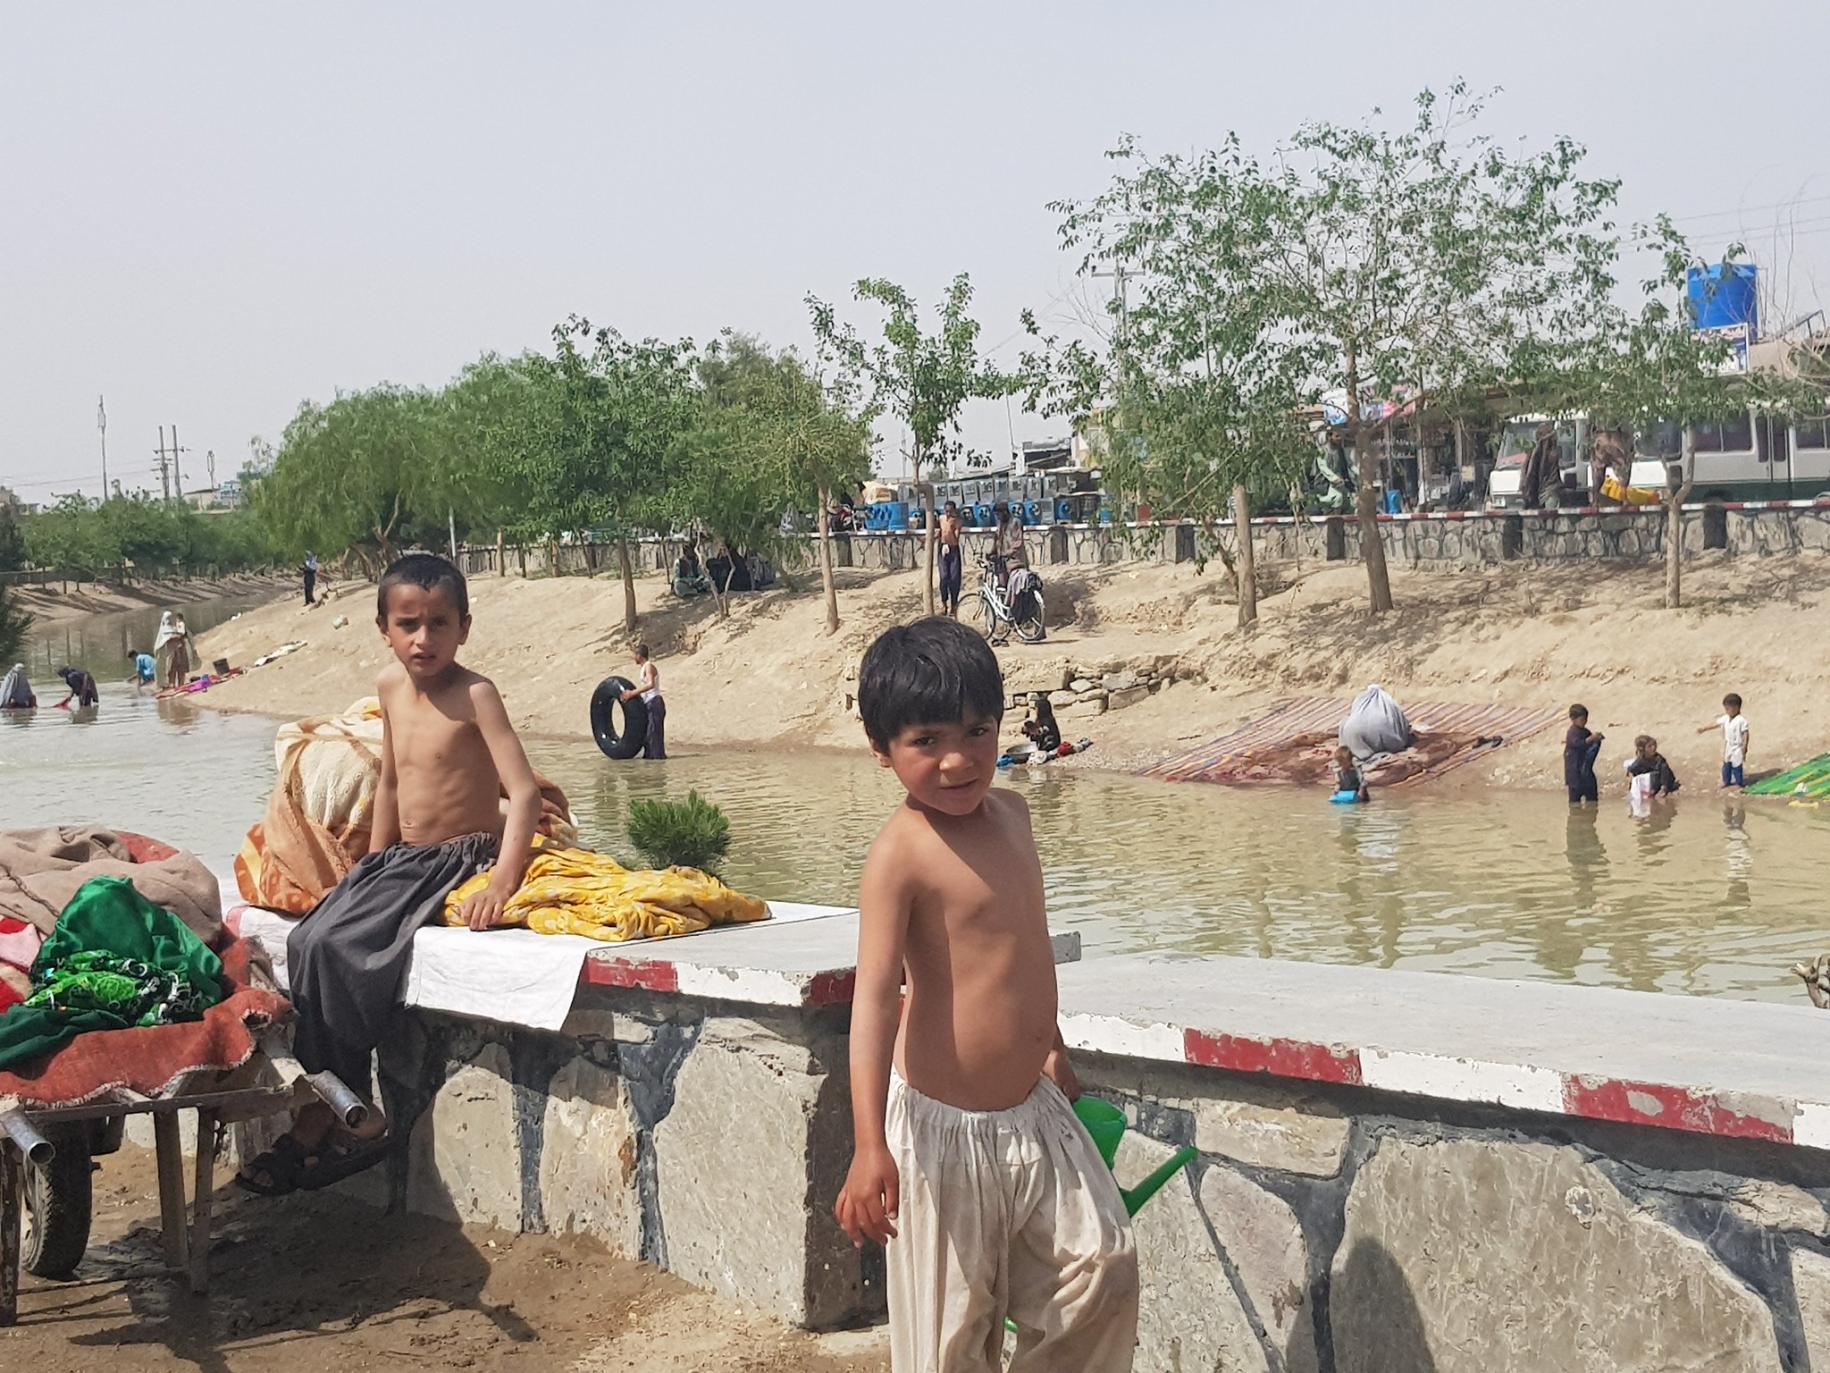 Des Afghan·e·s lavent des vêtements et des tapis dans une rivière, en famille, tandis que des enfants jouent au bord de l’eau pour se rafraîchir.